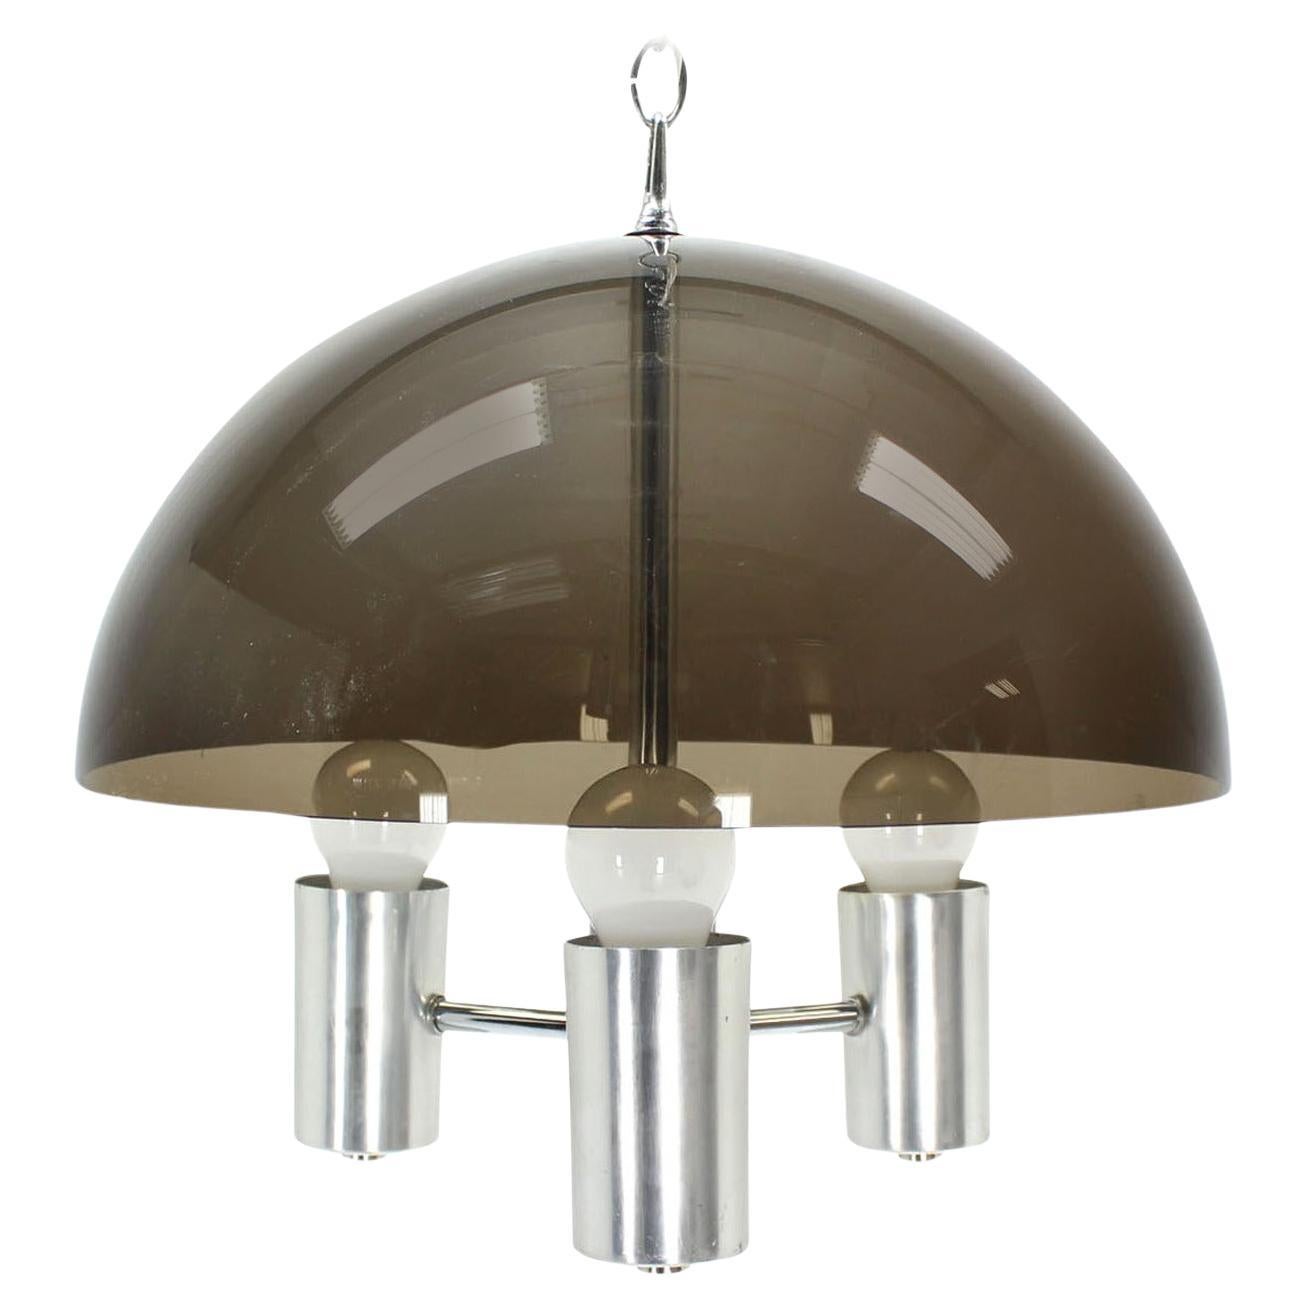 Smoked Lucite Dome Shape Shade Chrom Mid Century Modern 3 Glühbirnen  Lichteinrichtung